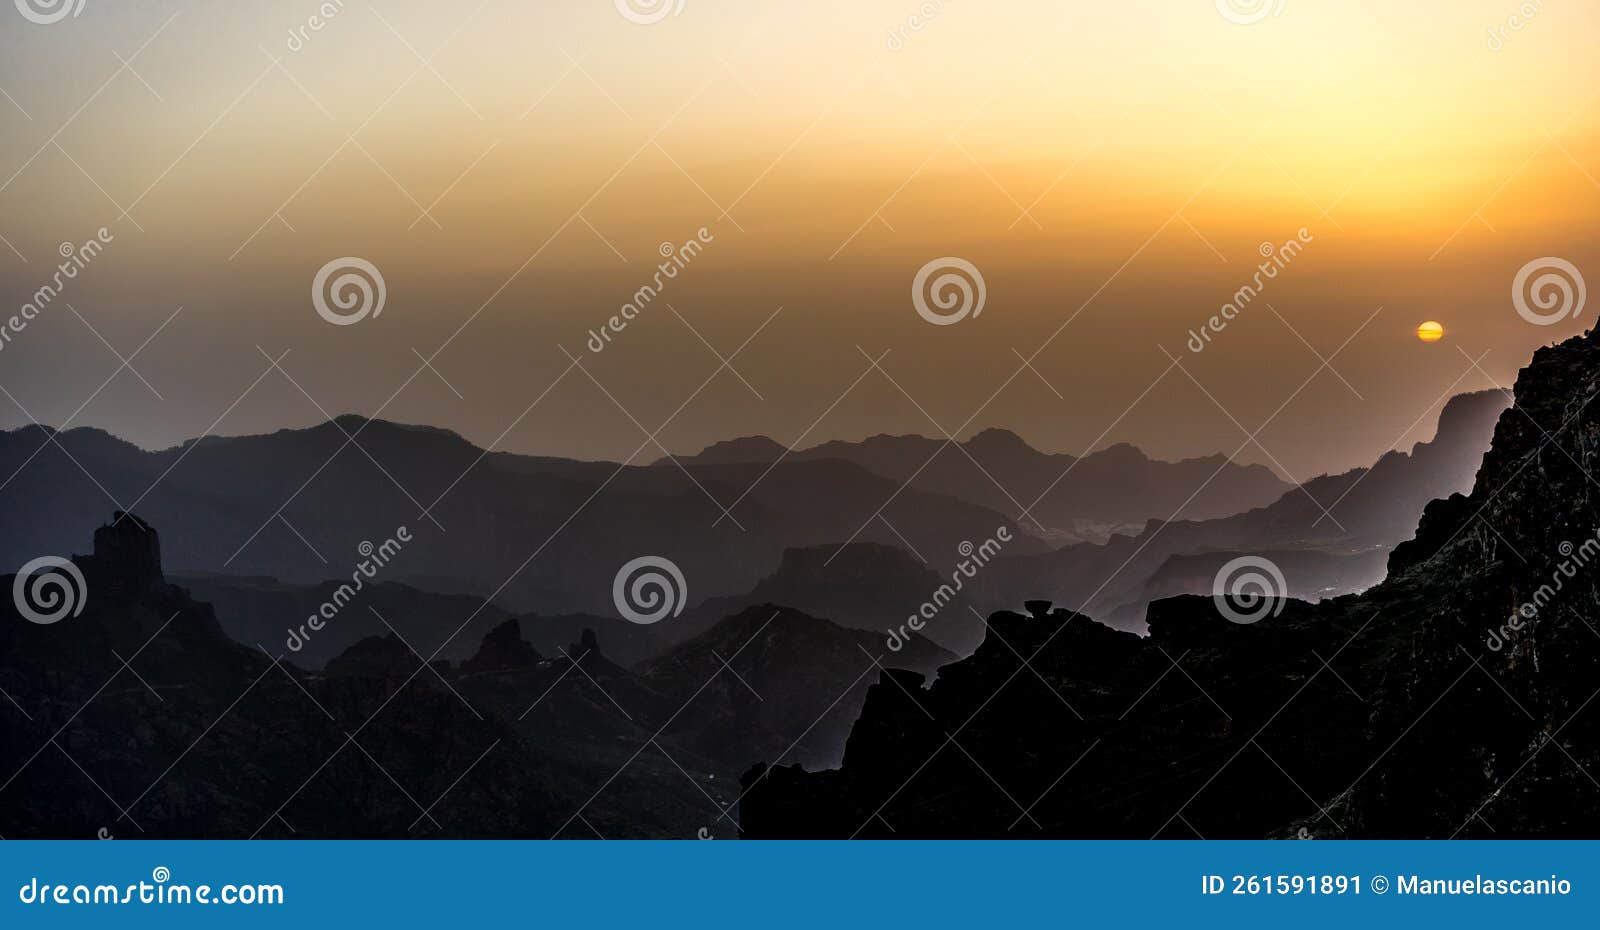 caldera de tejeda, degollada de las palomas, misty mountain layer shades landscape panorama from pico de la gorra, gran canaria is